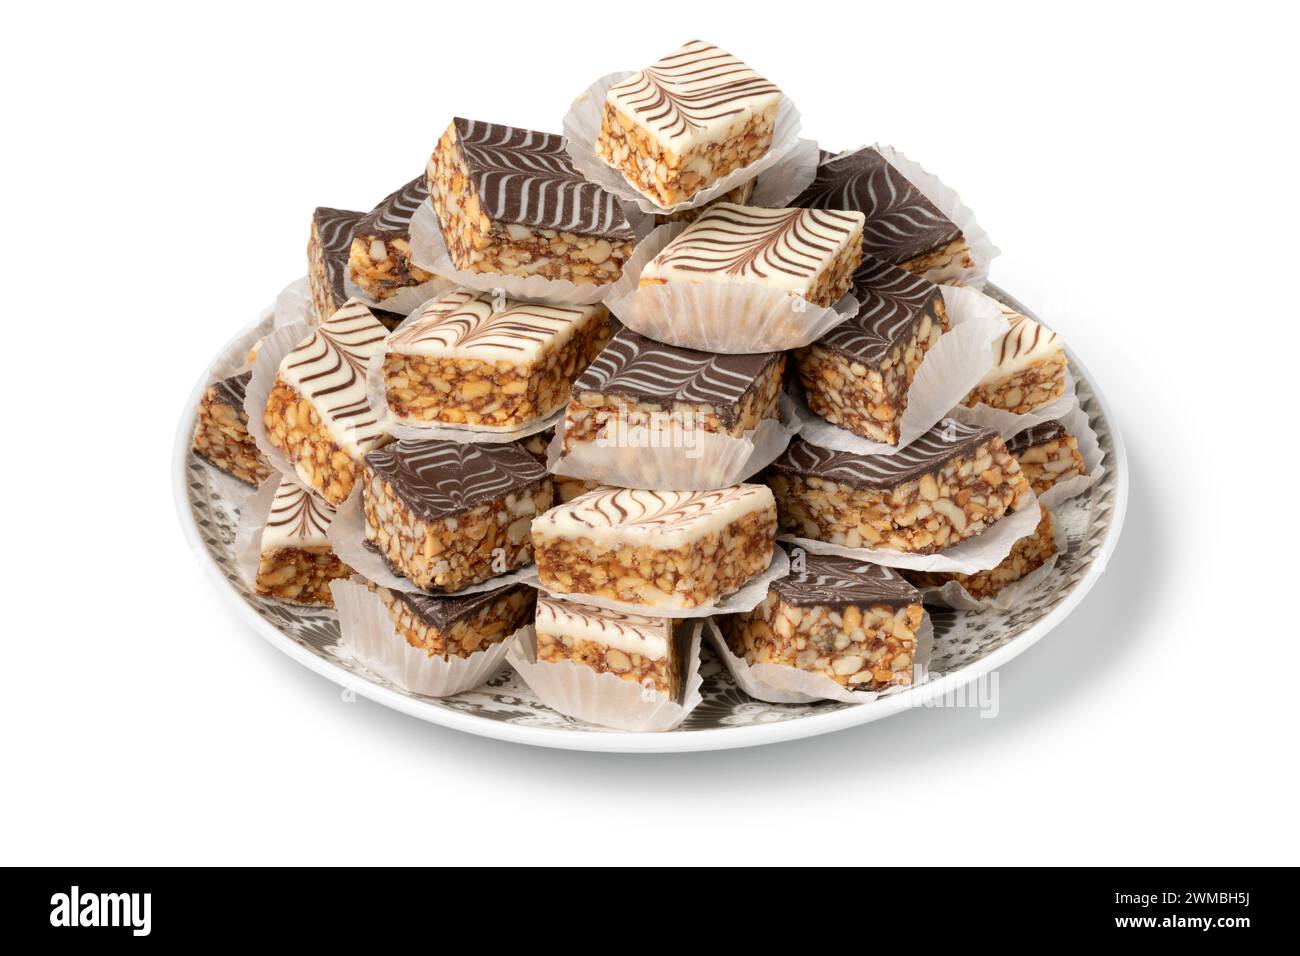 Assiette avec des biscuits au chocolat marbré marocain blanc et brun en gros plan isolé sur fond blanc Banque D'Images